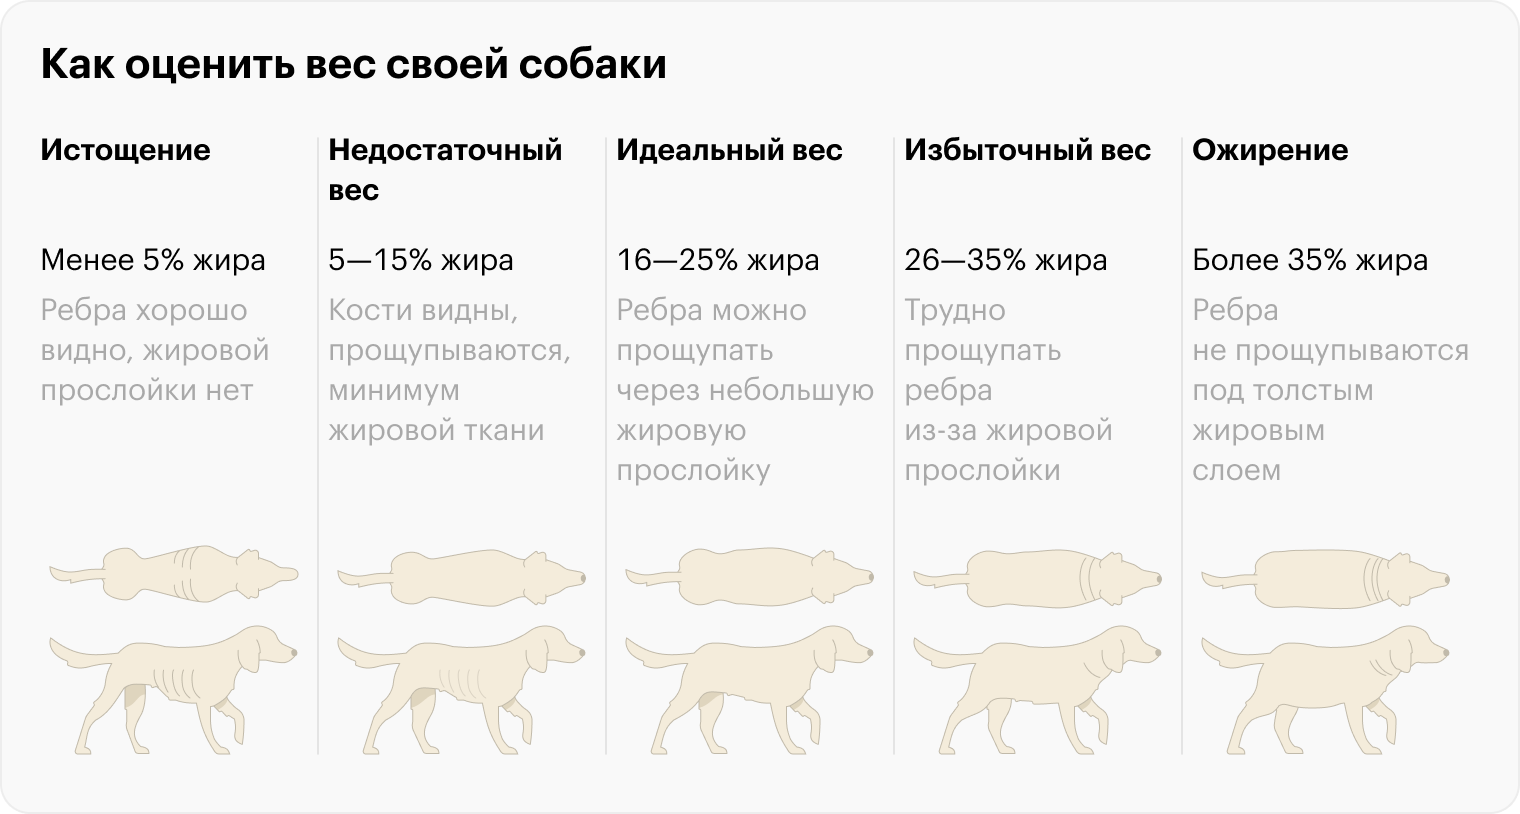 Сверьтесь с картинкой, чтобы оценить вес своей собаки. При оценке учитывайте породные особенности питомца: у некоторых пород талия менее выражена